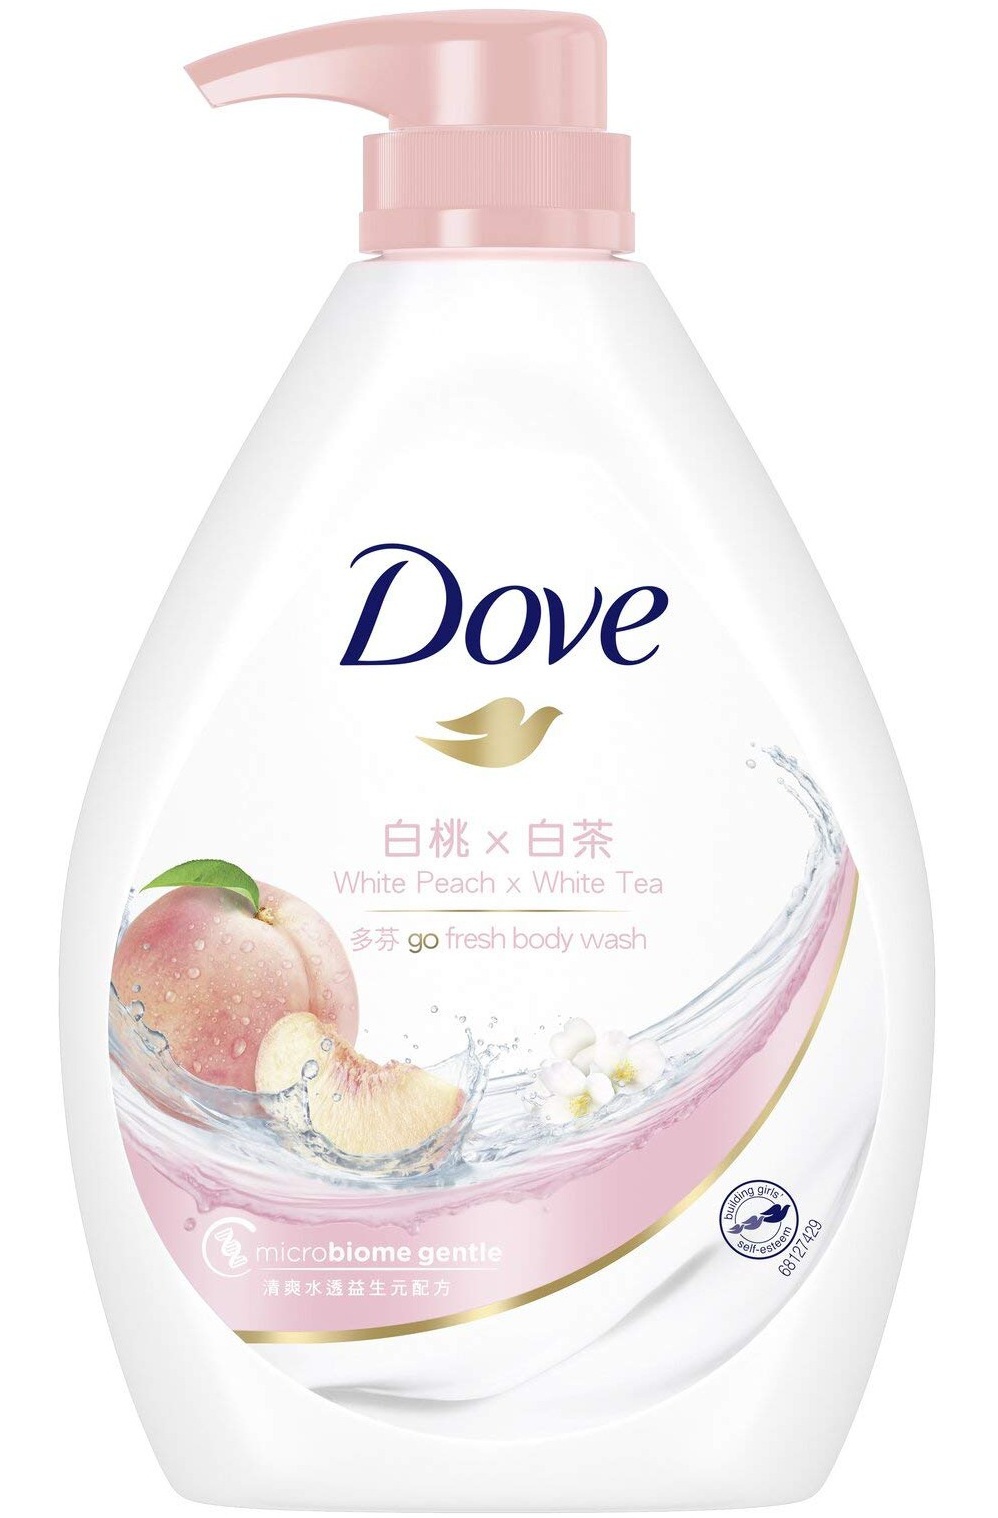 Dove Go Fresh Shower Gel White Peach X White Tea